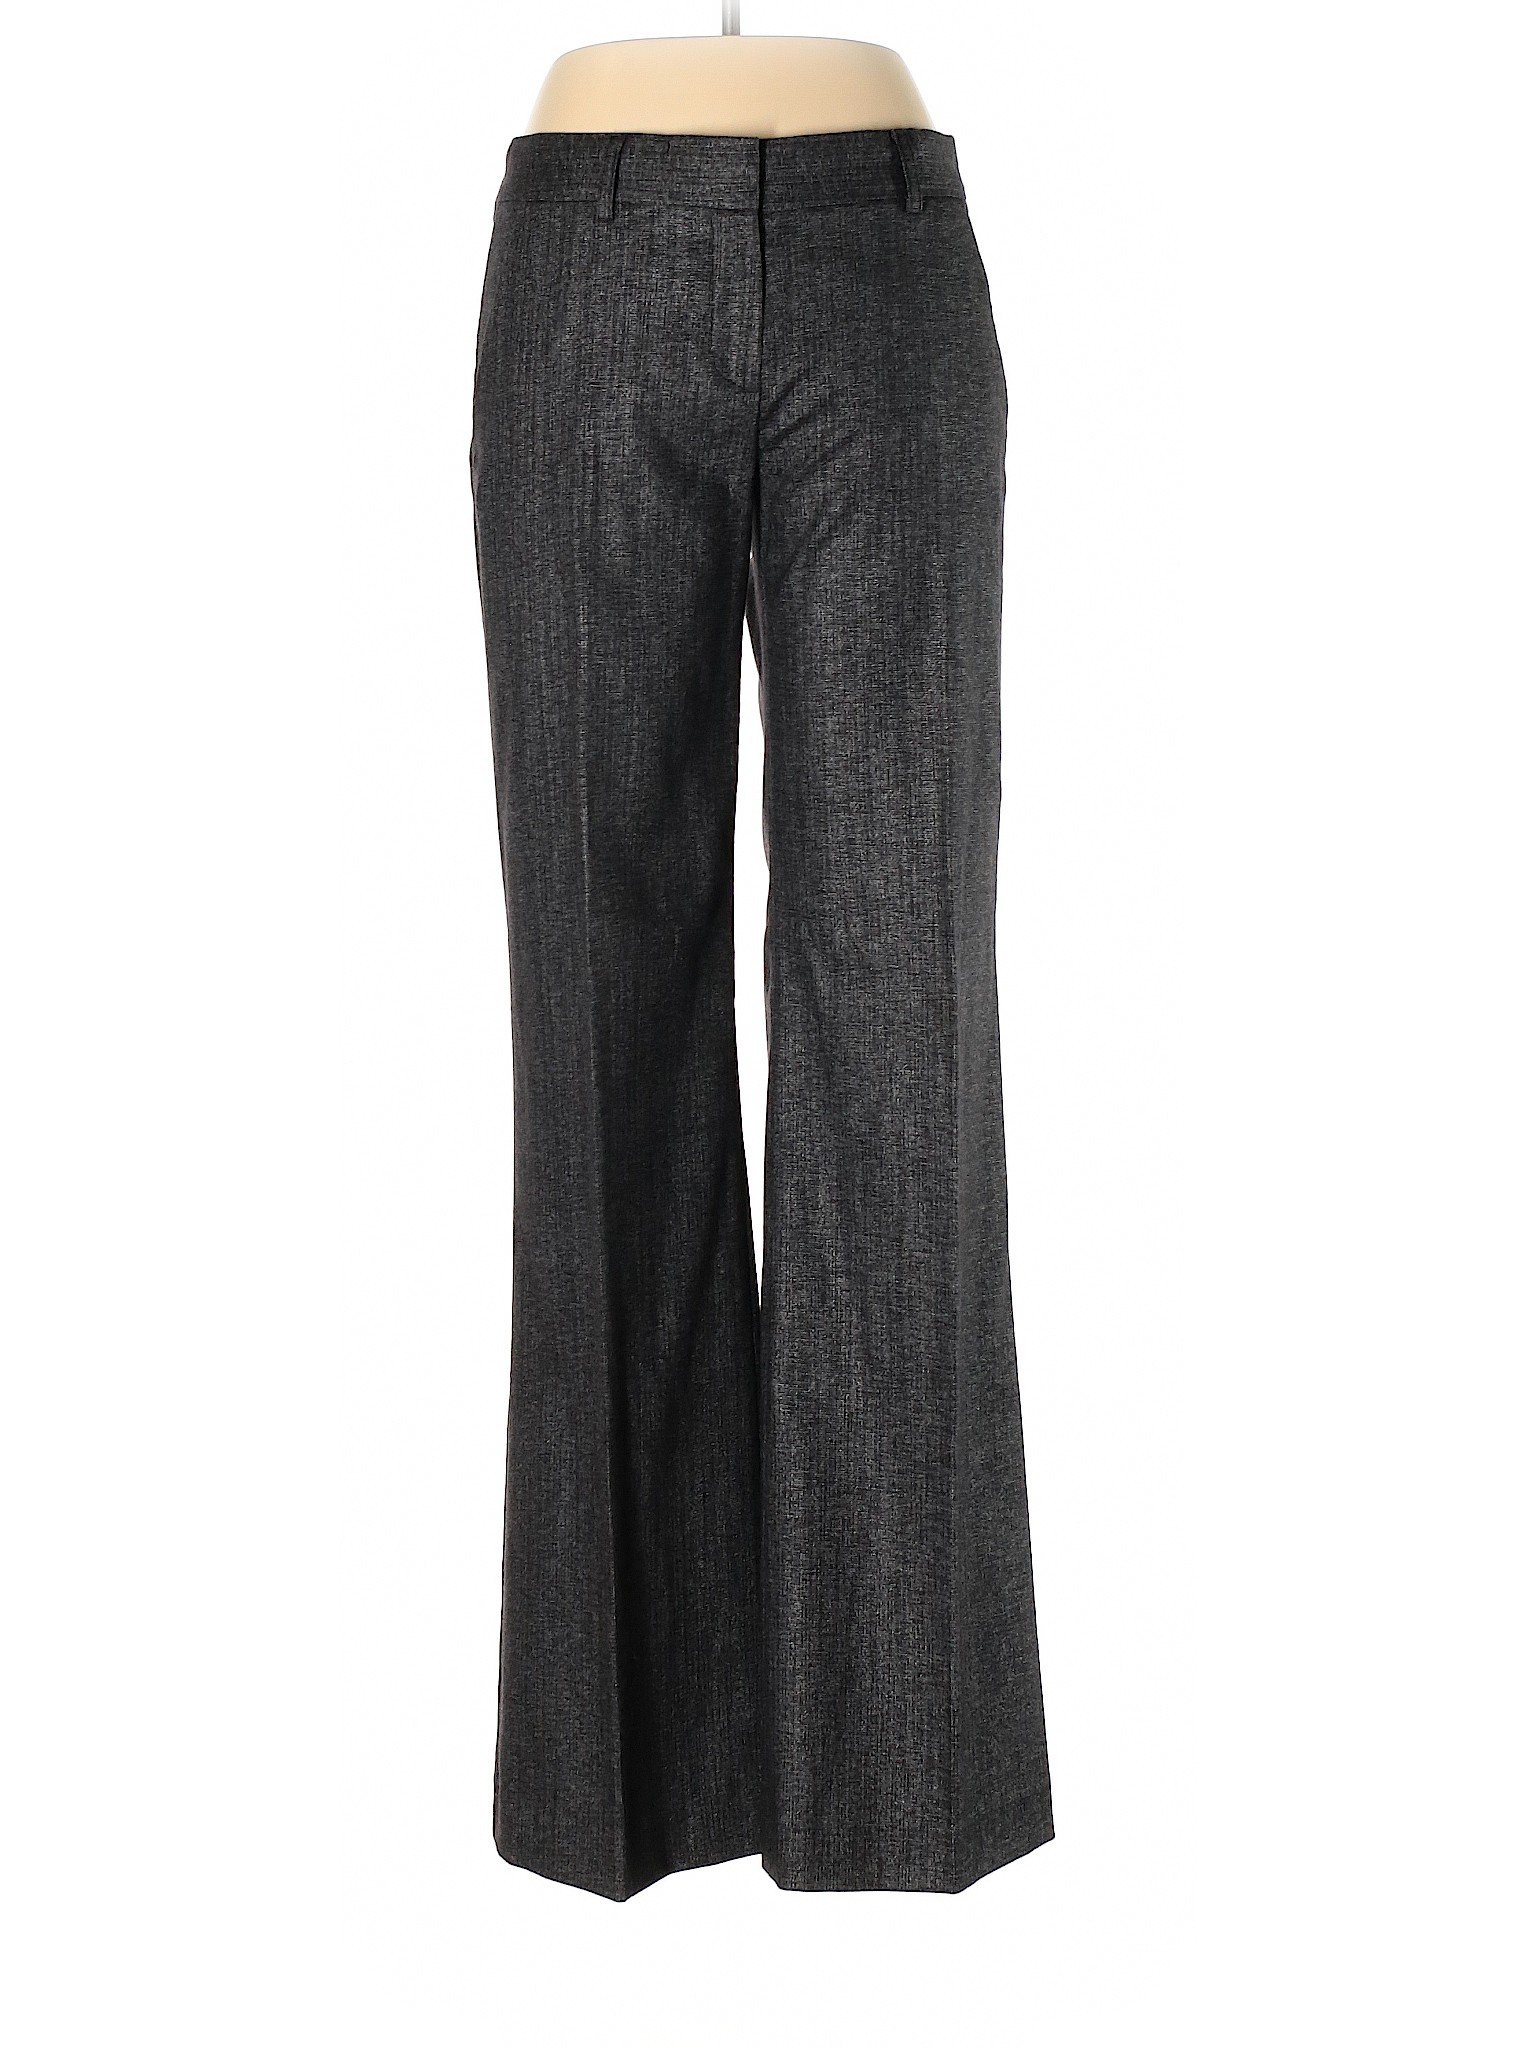 Theory Women Gray Wool Pants 8 | eBay